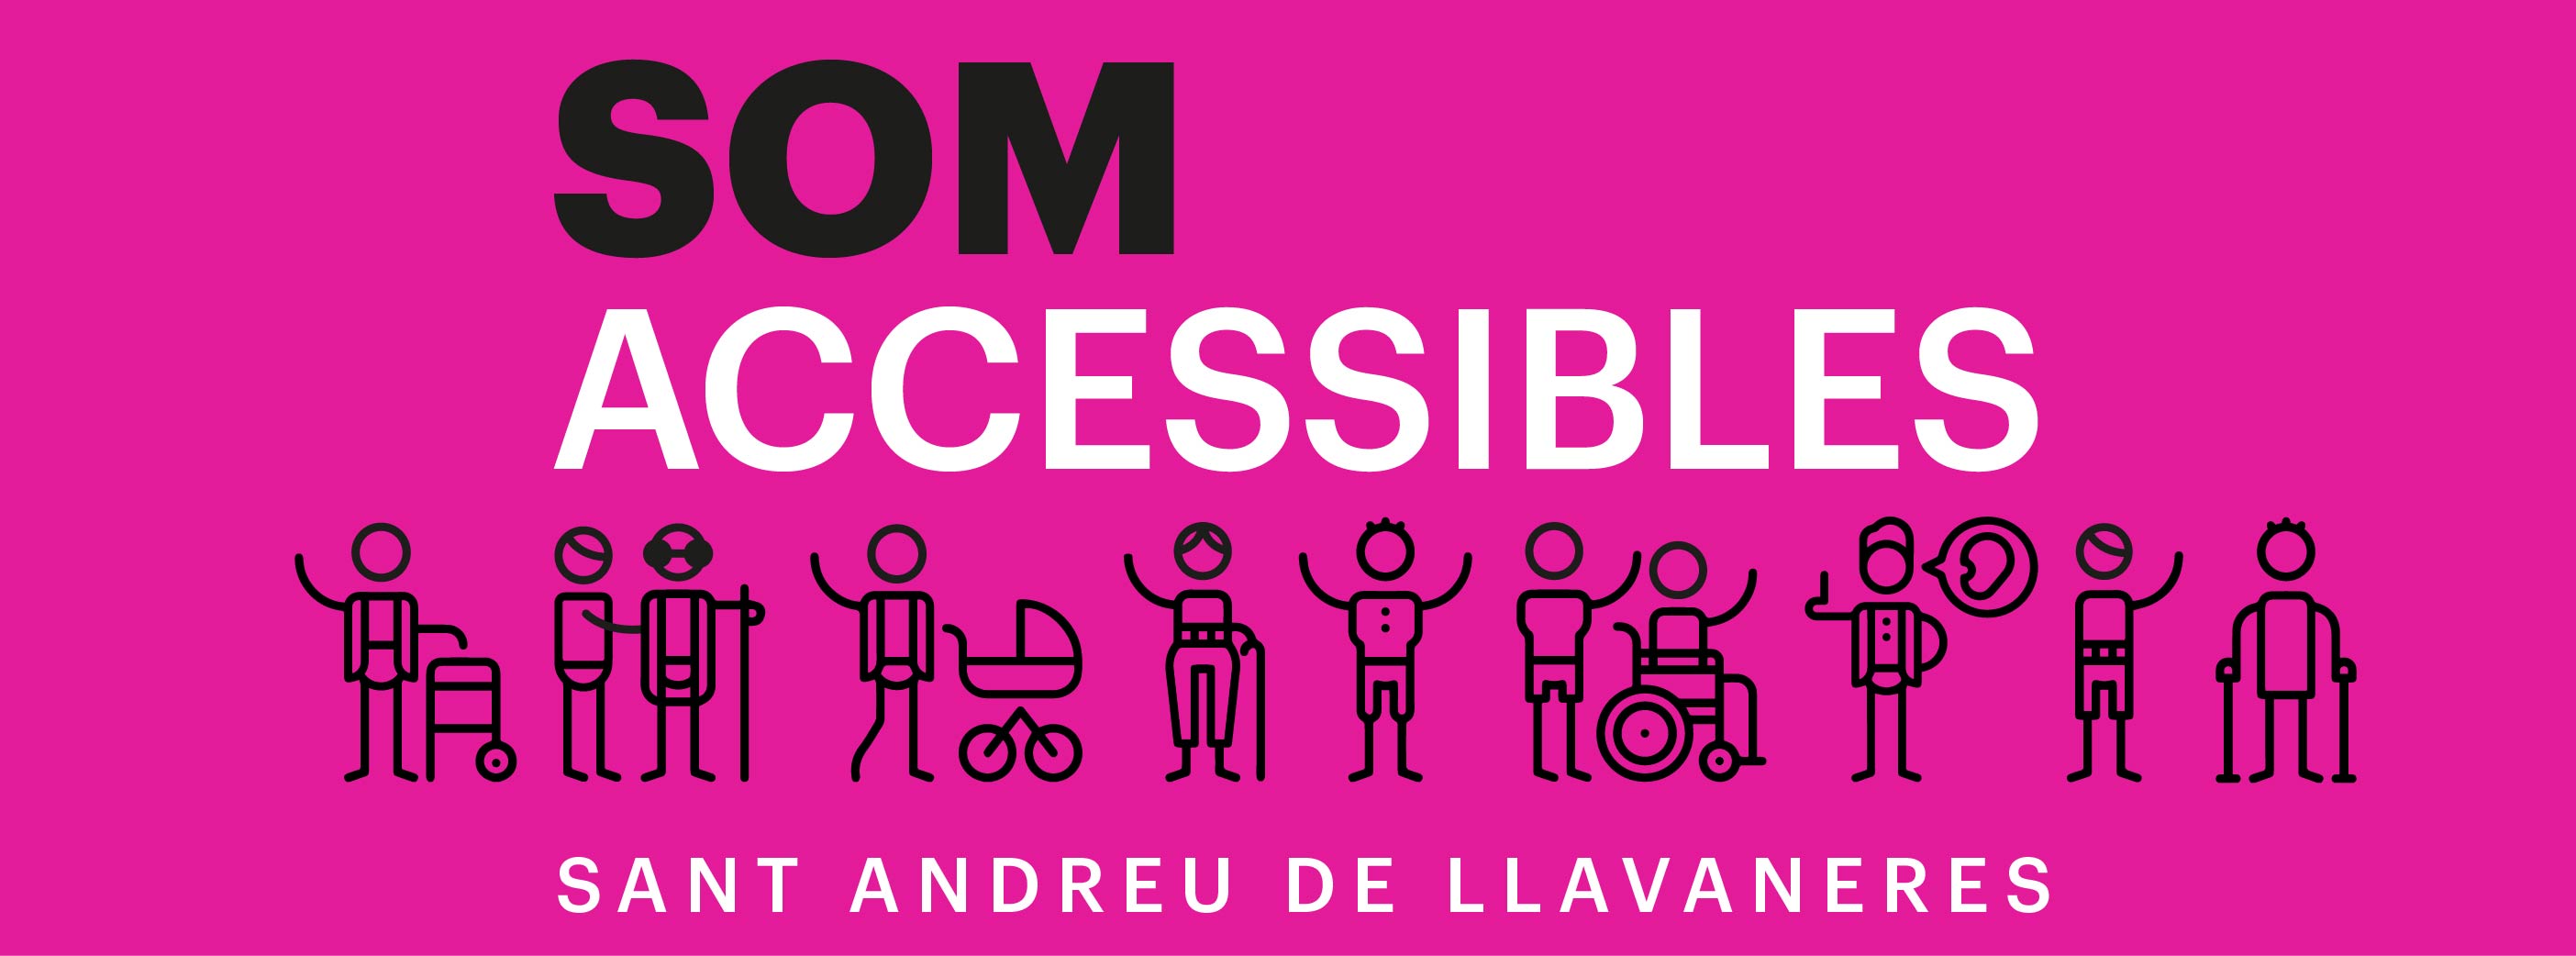 Baner 'Som Accessibles'